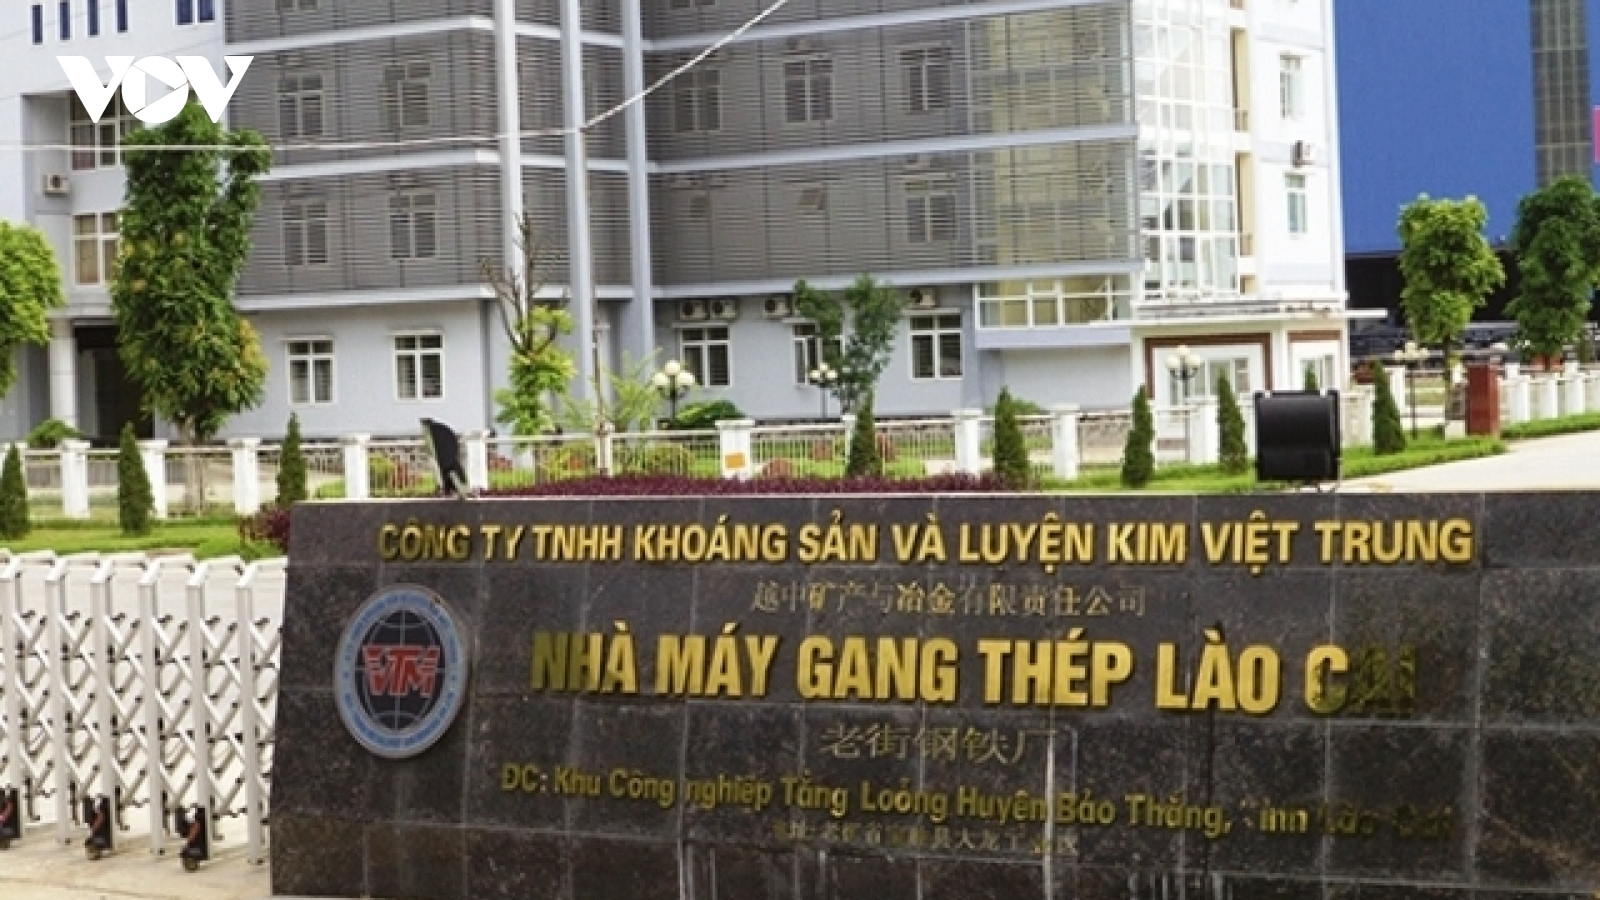 Lãi âm trên 300%, Nhà máy Gang thép Lào Cai đứng trước nguy cơ “tắt lò”